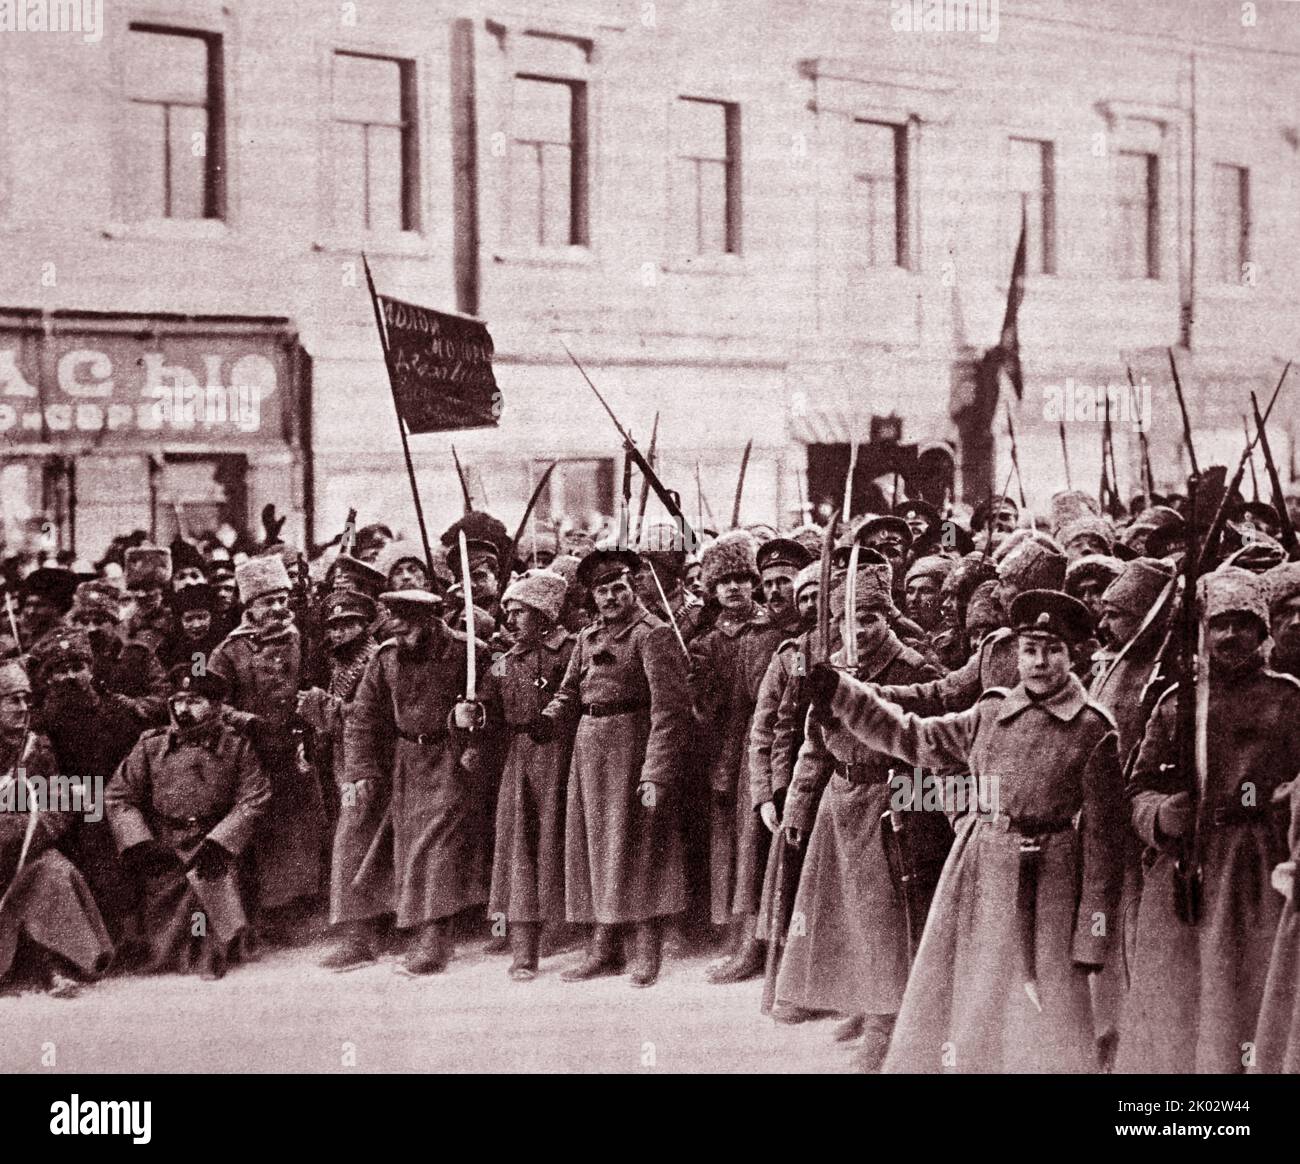 Eine Gruppe revolutionärer Soldaten der Petrograder Militärgarnison, die auf die Seite des aufständischen Volkes ging. Petrograd, Februar 1917. Foto von K. Bulla. Stockfoto